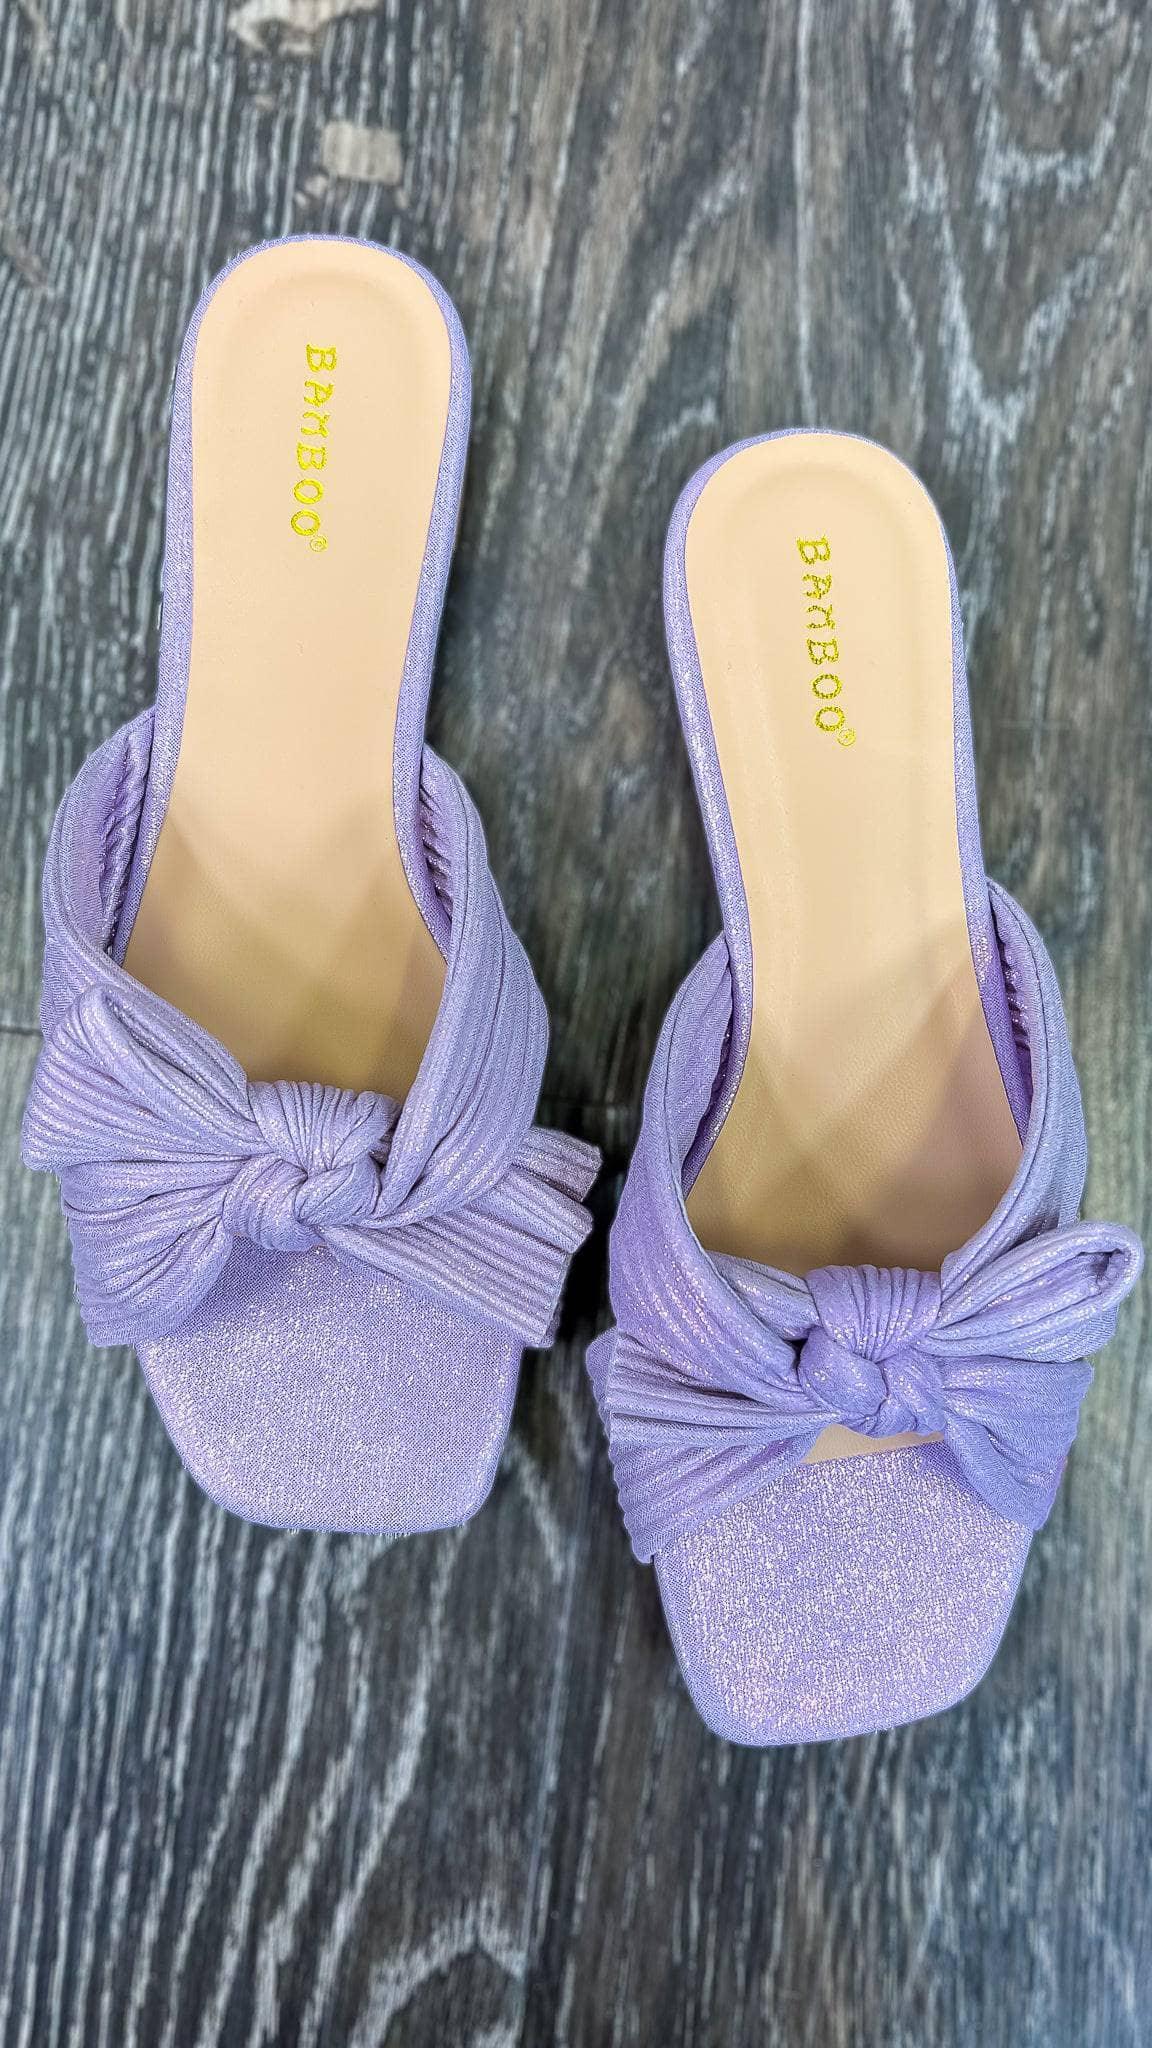 Purple Brandie Sandals - The ZigZag Stripe